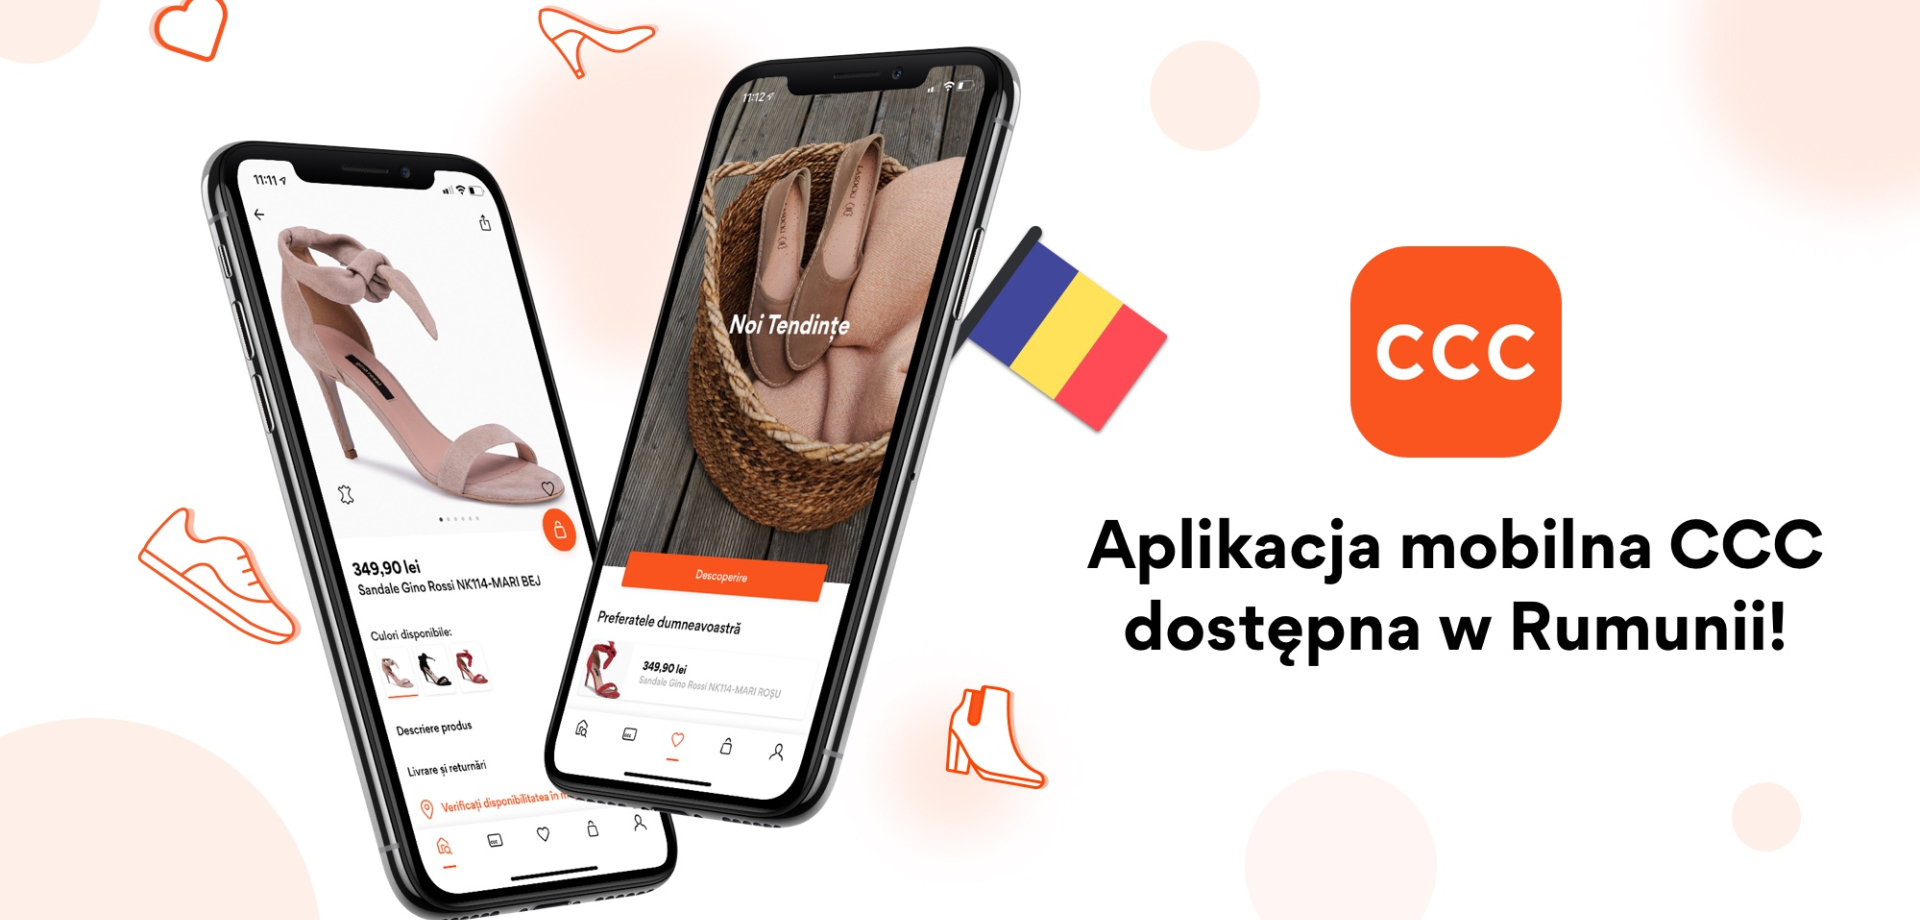 Start aplikacji mobilnej CCC w Rumunii